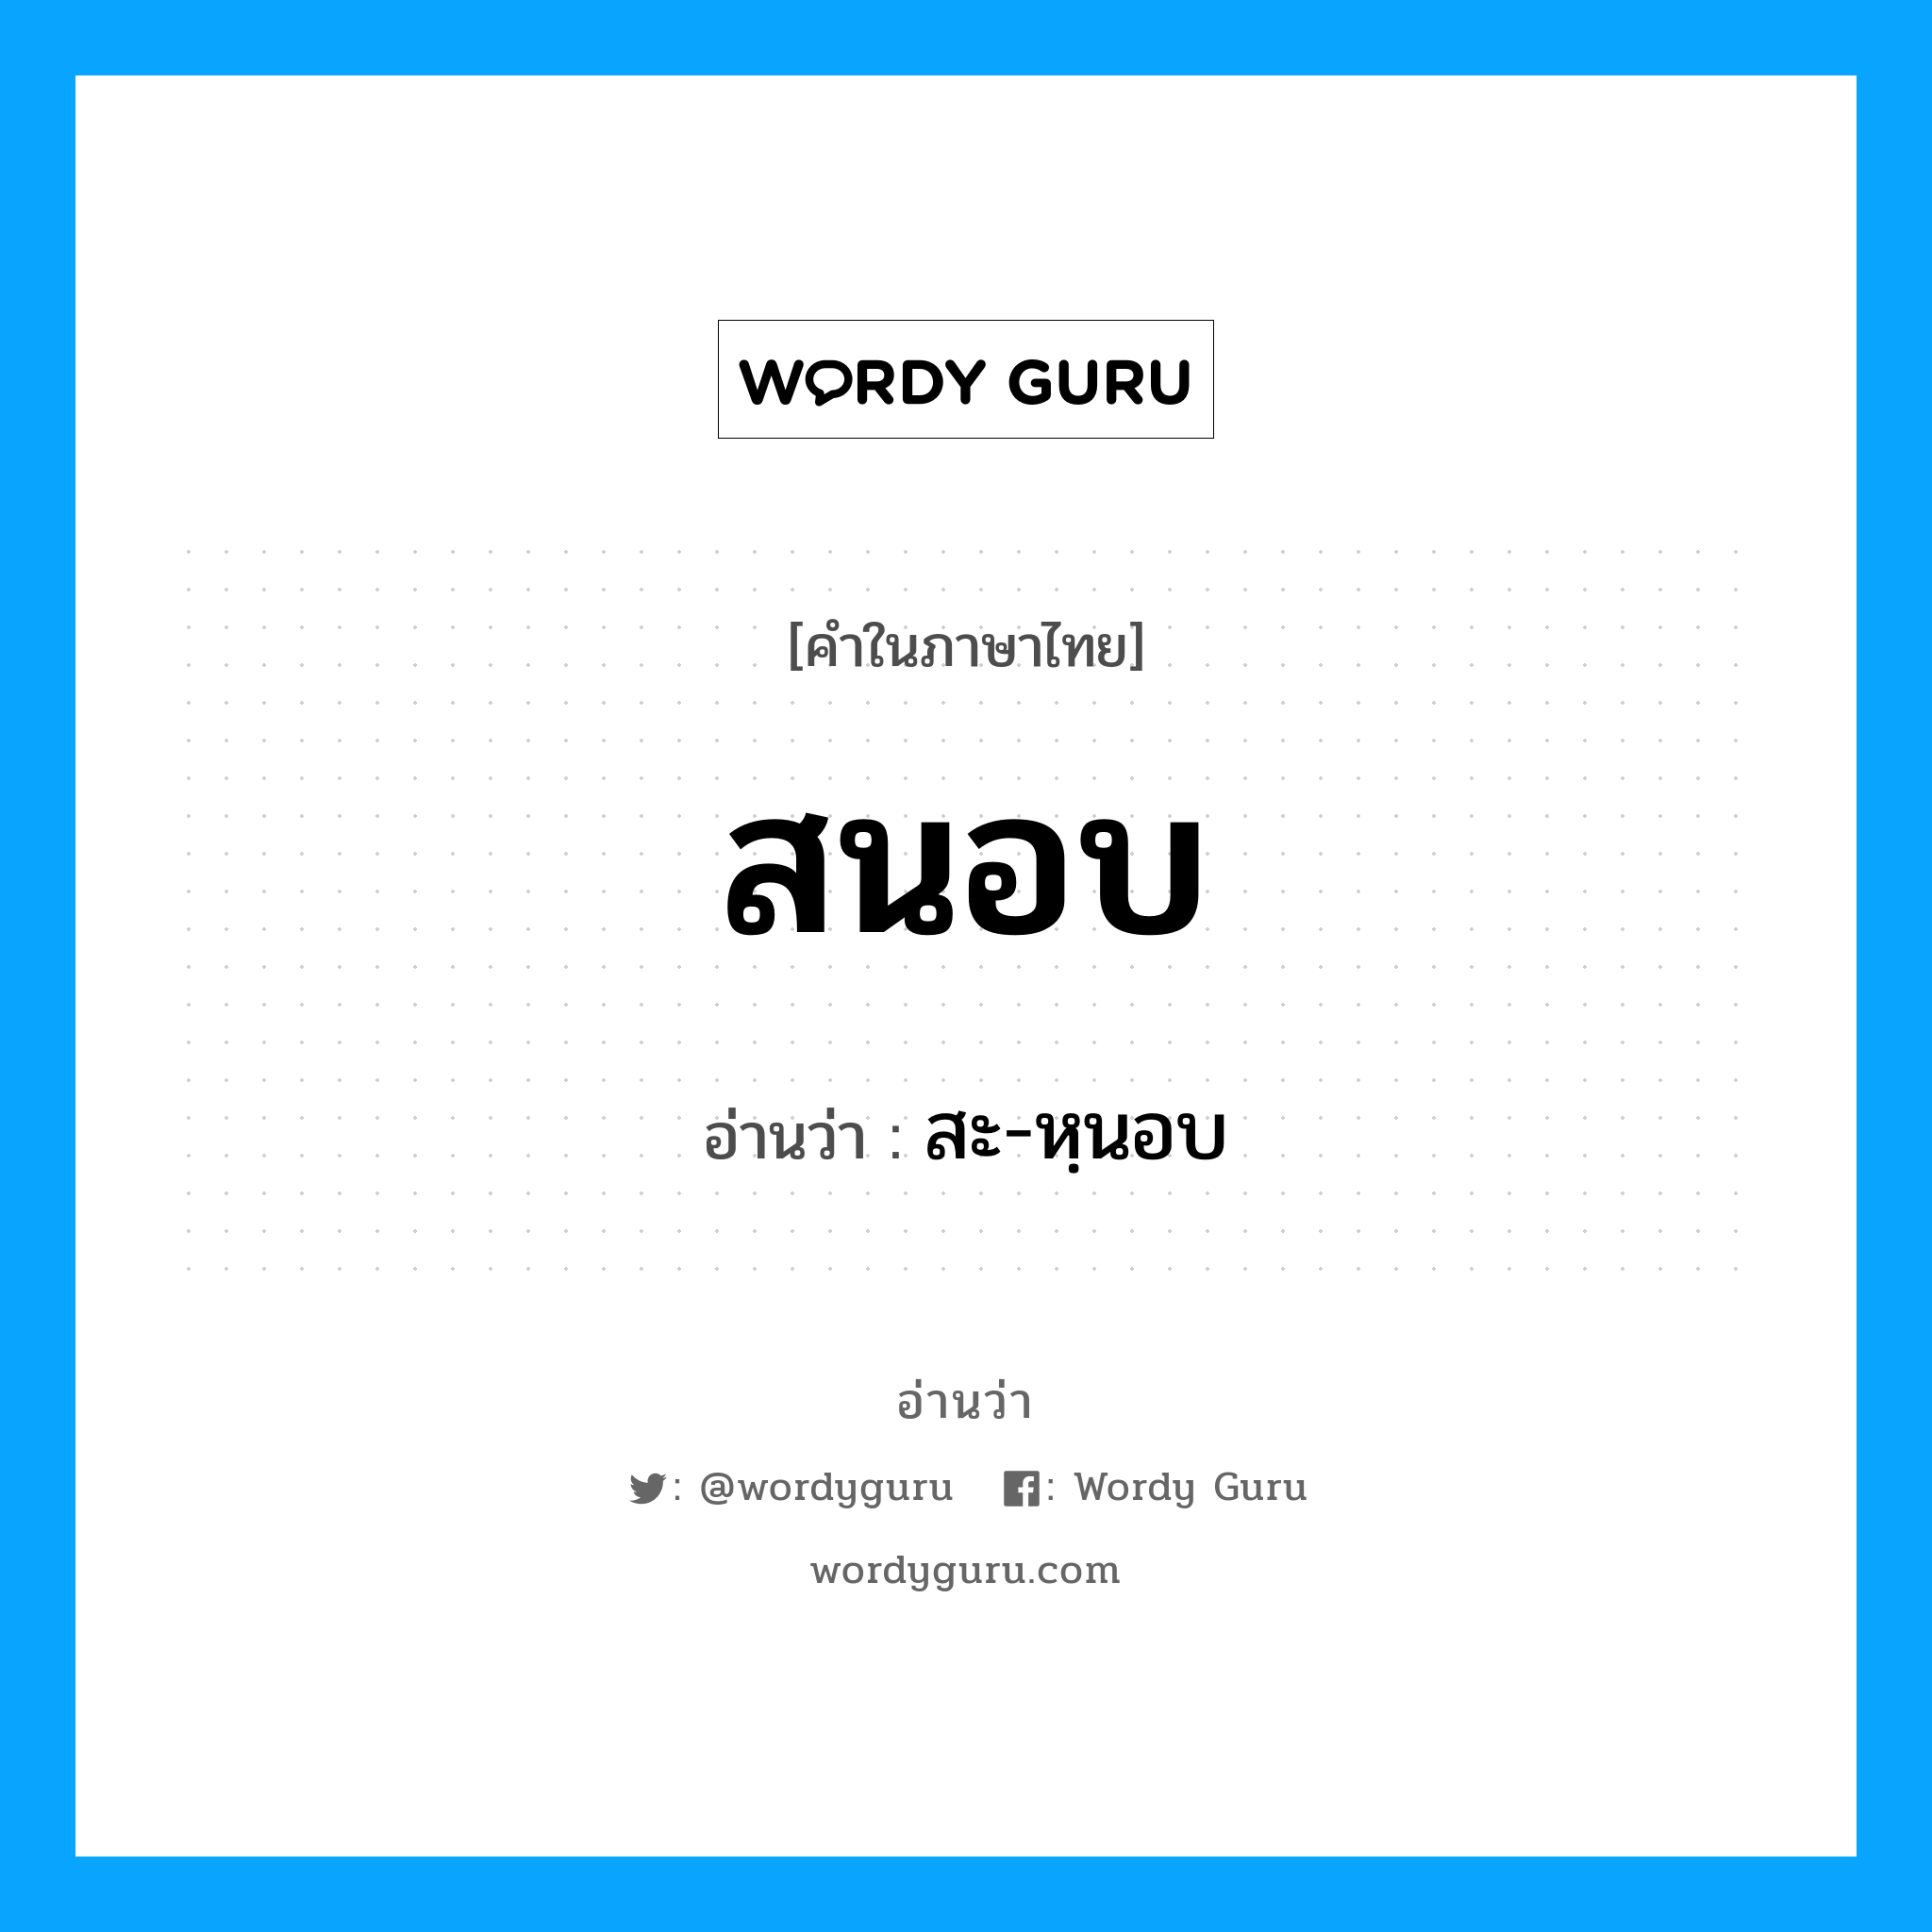 สะ-หฺนอบ เป็นคำอ่านของคำไหน?, คำในภาษาไทย สะ-หฺนอบ อ่านว่า สนอบ